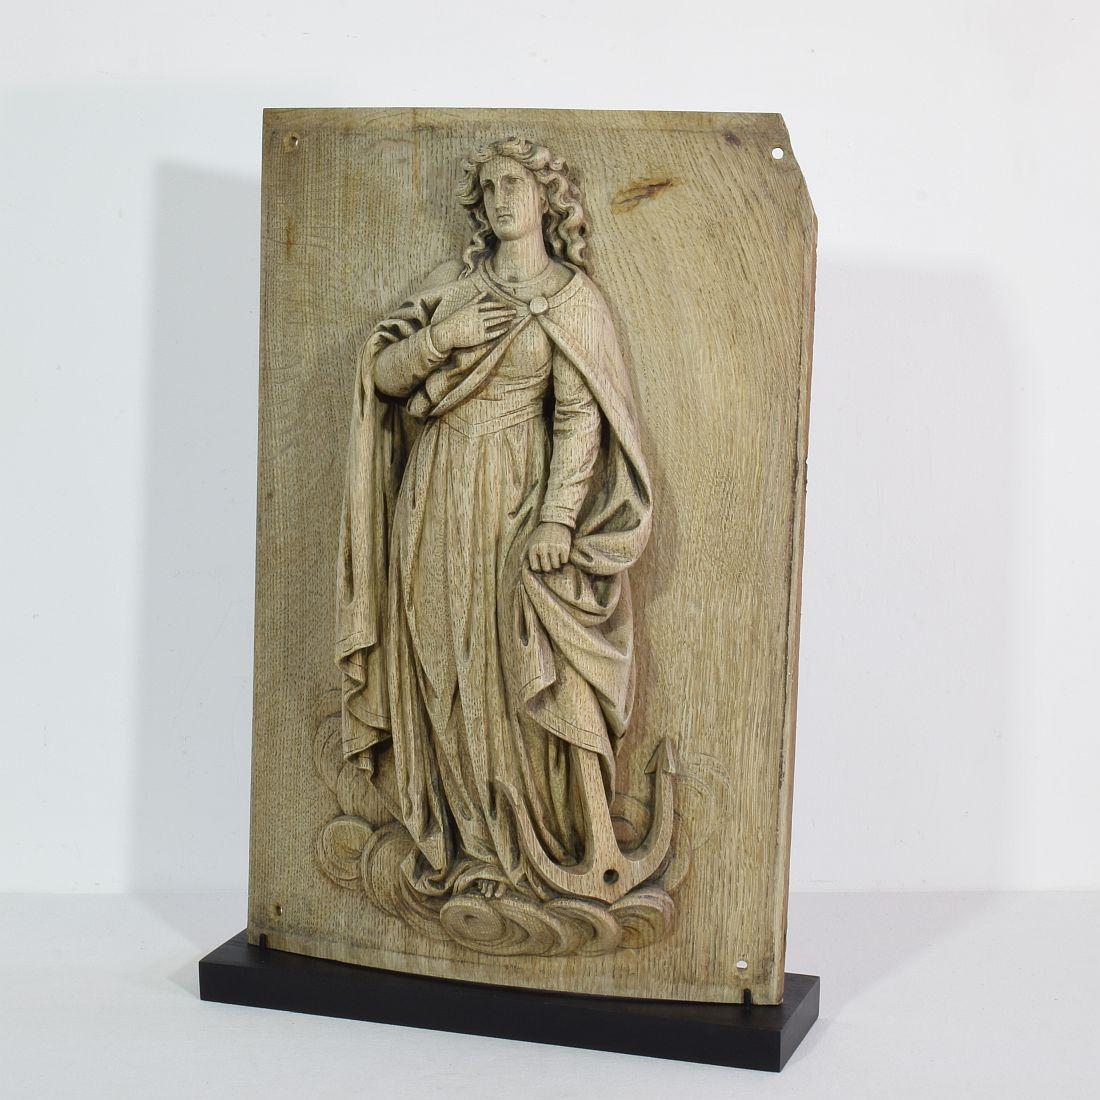 Schöne verwitterte Eichentafel, die die Heilige Philomena darstellt.

Philomena von Rom war eine junge Märtyrerin, deren sterbliche Überreste am 24. und 25. Mai 1802 in der Katakombe von Priscilla entdeckt wurden. Drei Kacheln, die das Grab